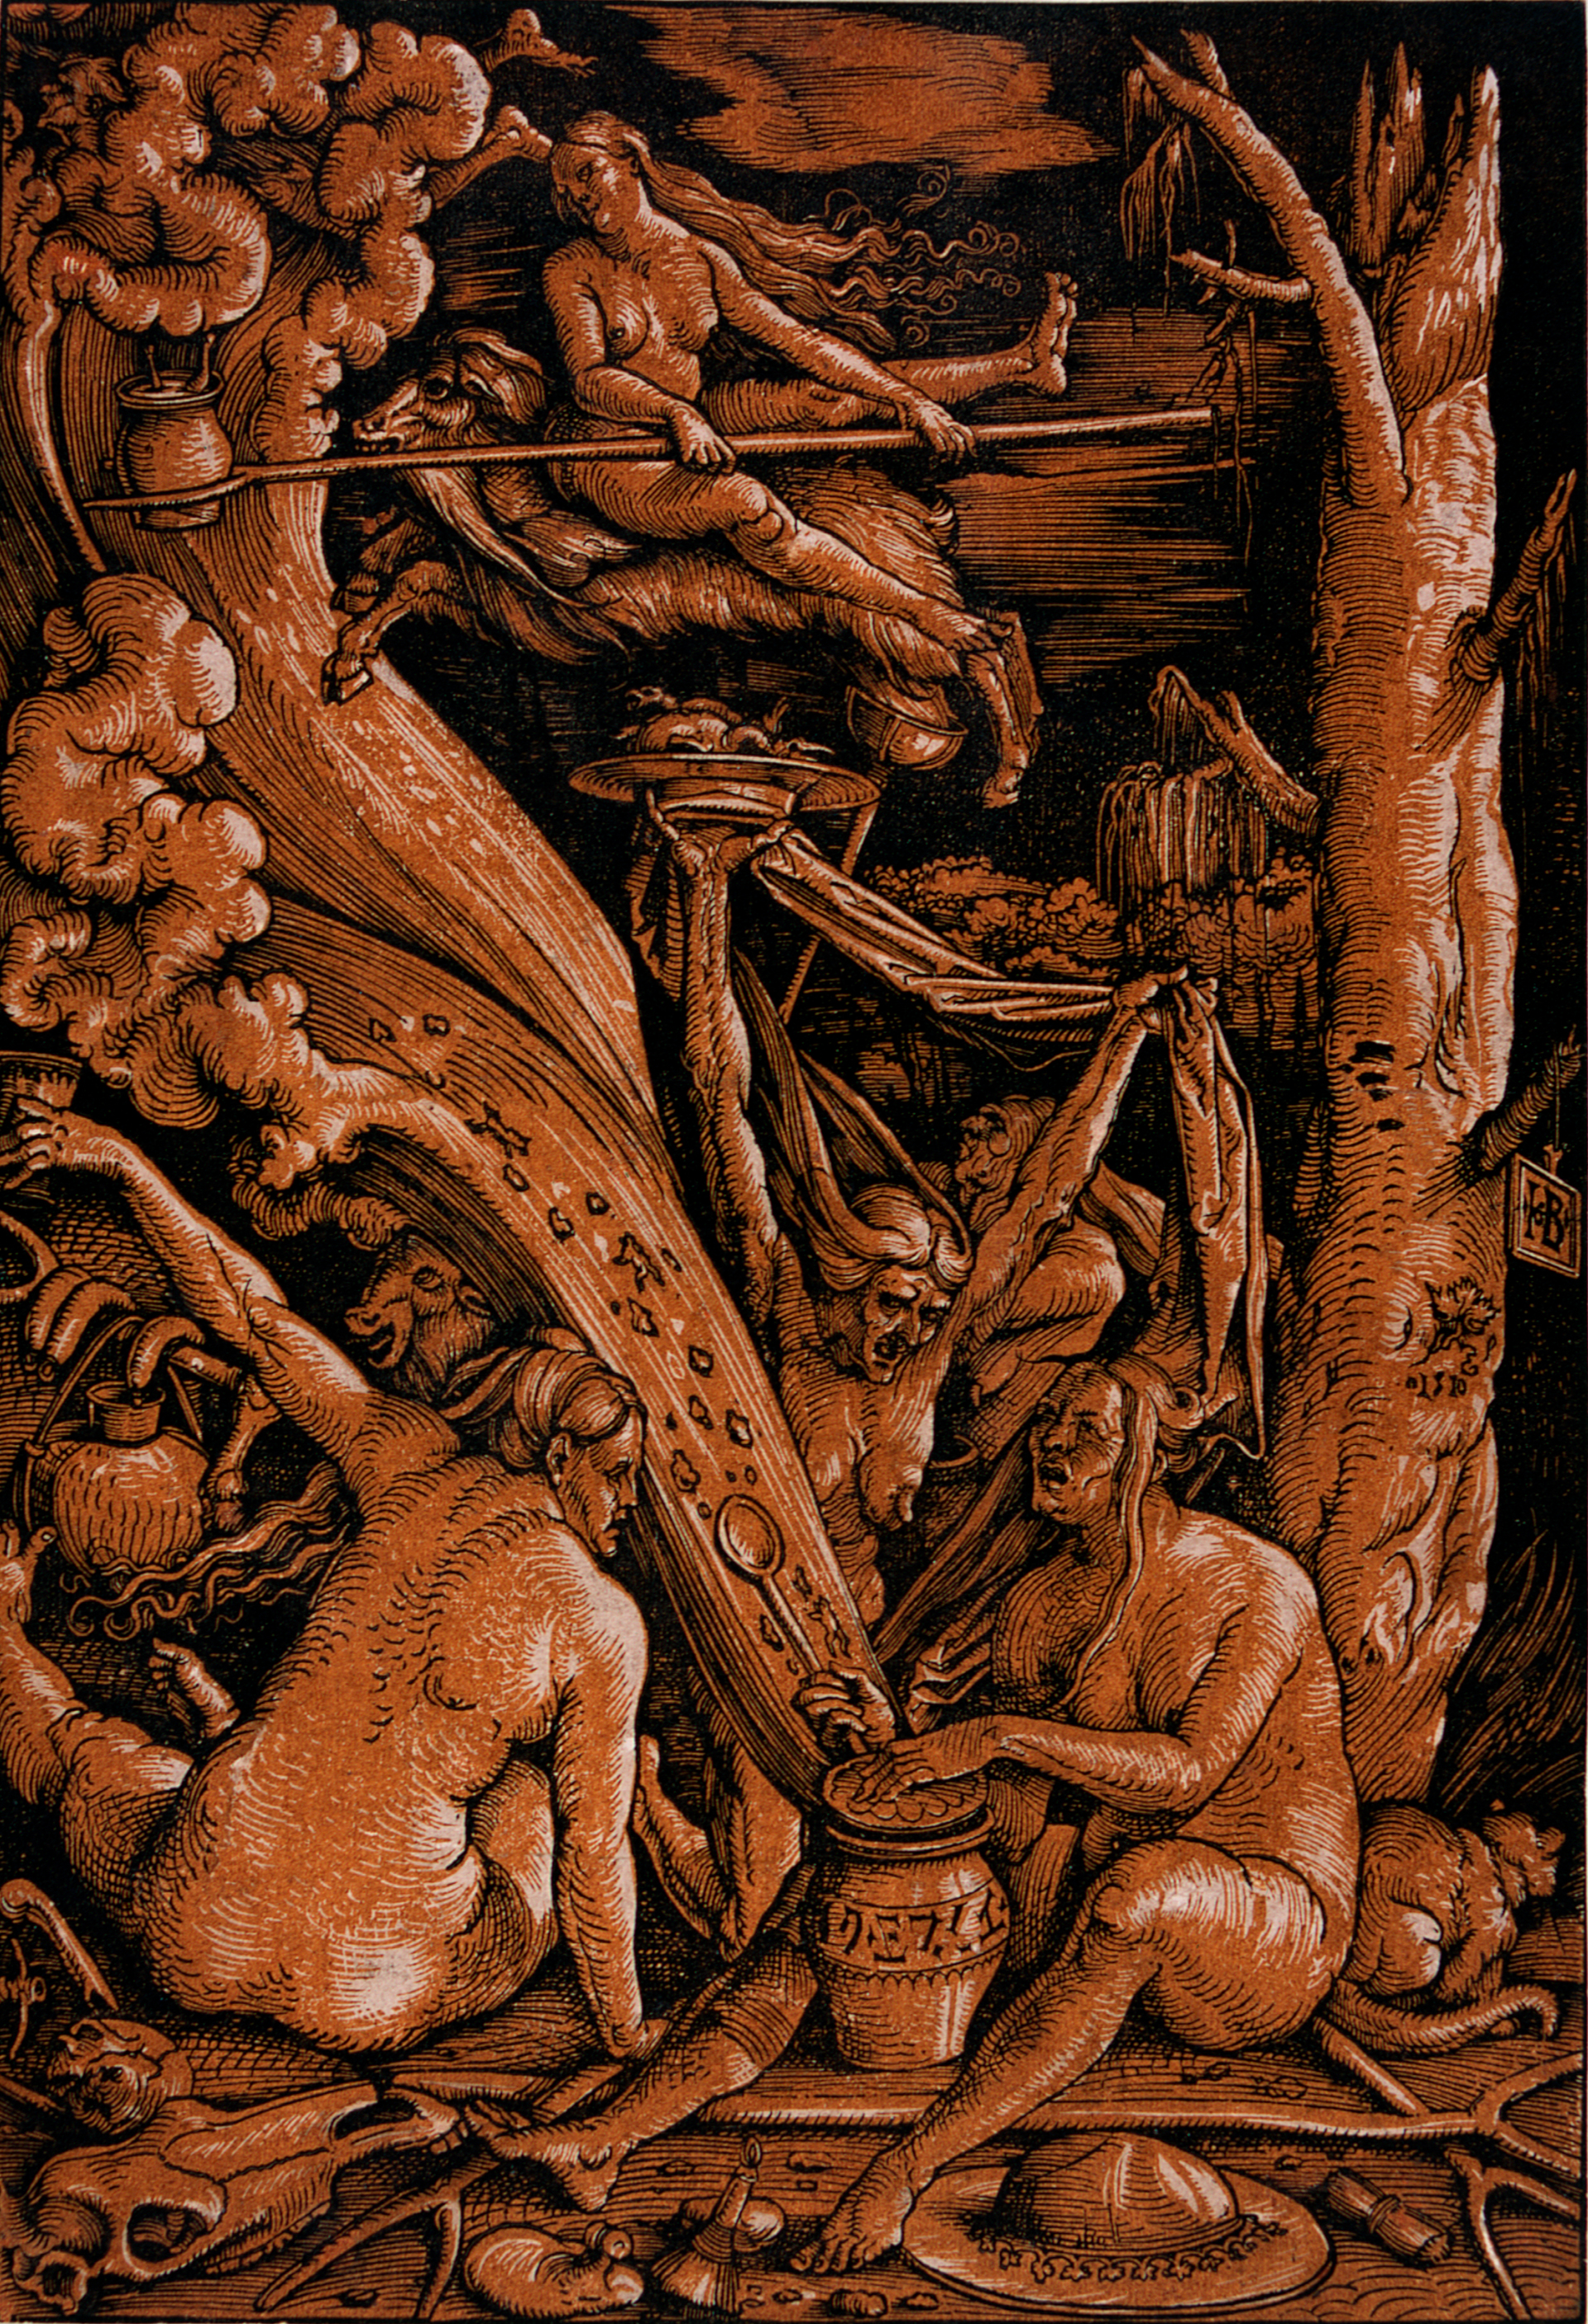 Abbildung des Werks "Hexen" von Hans Baldung Grien, entstanden 1510. Zu sehen sind halbnackte Hexen die fliegen und am Boden hocken.